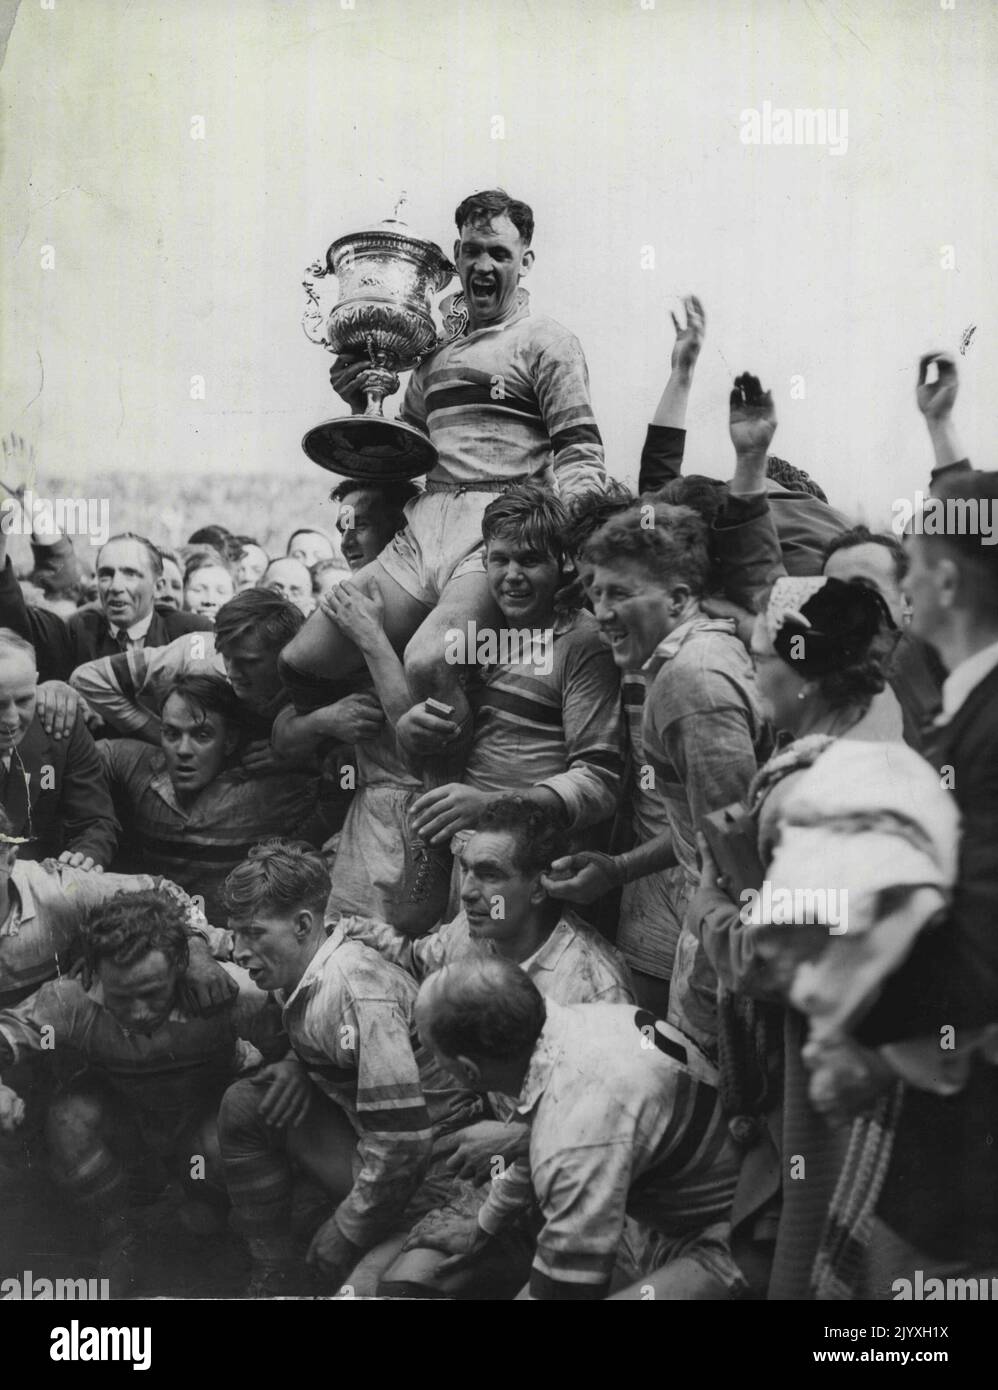 Finale de la ligue de rugby (Maine Road). Frodsham, Warrington à fond, et commandant en exercice de Warrington, tiennent avec jubilé la coupe de championnat de la Ligue, soutenue par ses copains d'équipe, qui font pression contre la force de la foule. 8 mai 1954. Banque D'Images